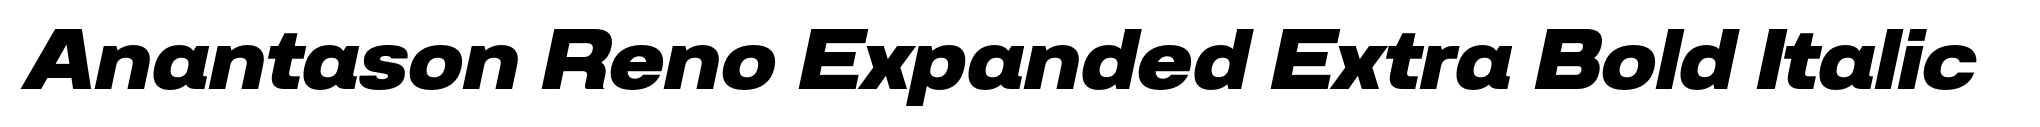 Anantason Reno Expanded Extra Bold Italic image